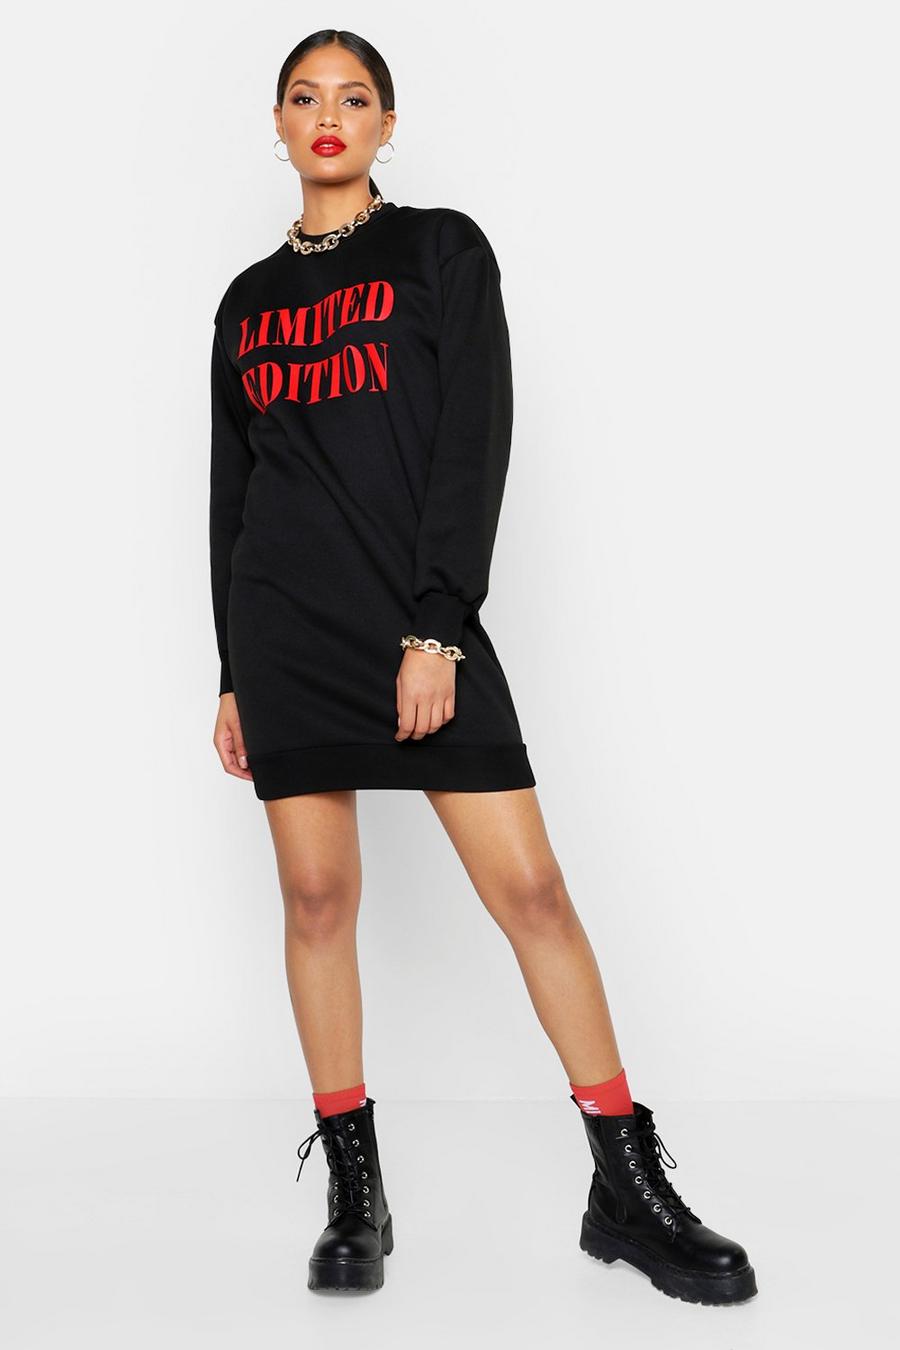 Vestido estilo suéter con eslogan “Limited Edition” Tall image number 1